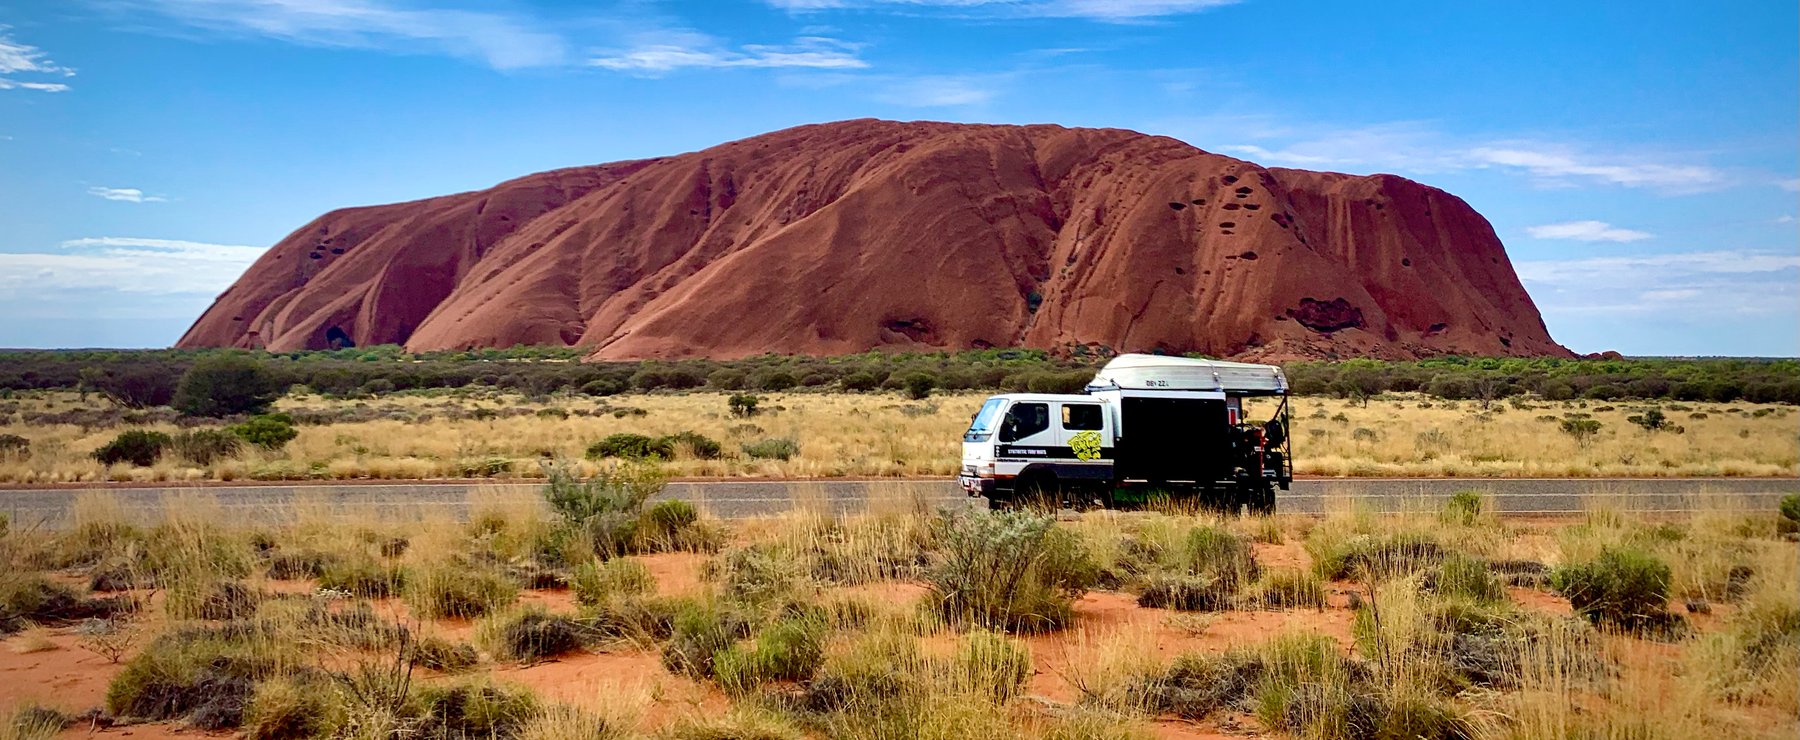 Tidy Turf Mats see Uluru. 